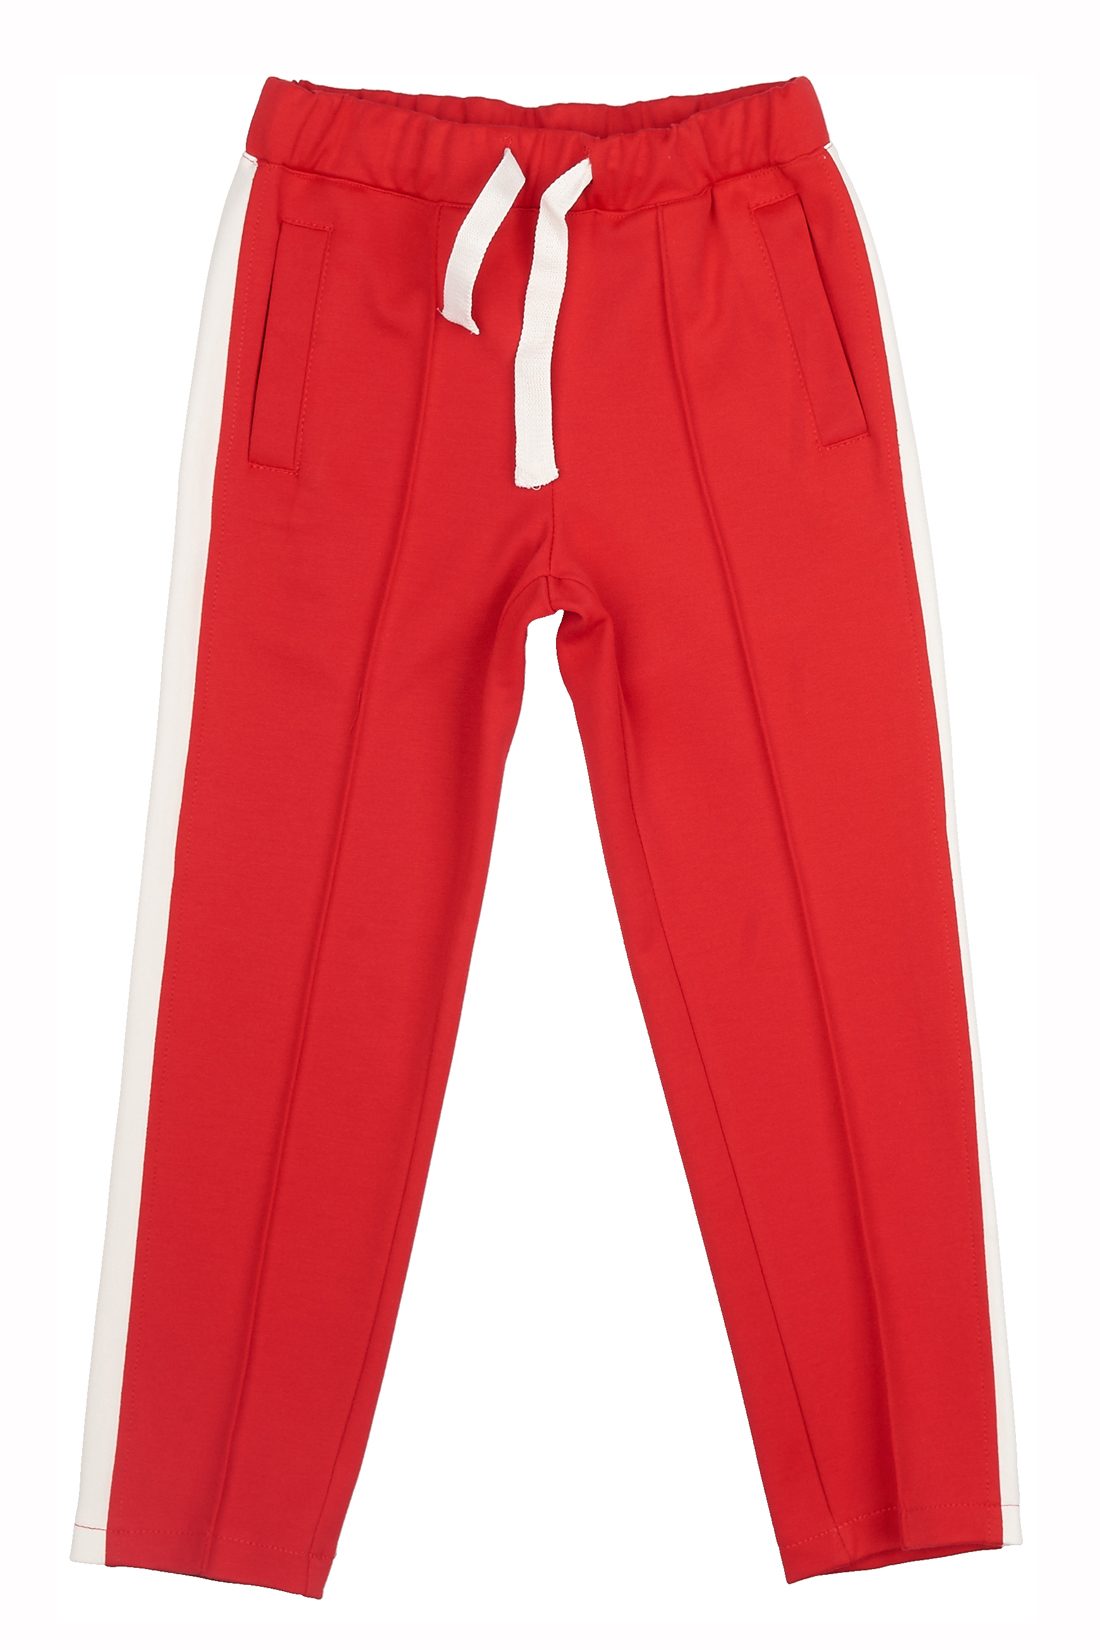 Трикотажные брюки для девочки (арт. baon BK298006), размер 110-116, цвет красный Трикотажные брюки для девочки (арт. baon BK298006) - фото 3